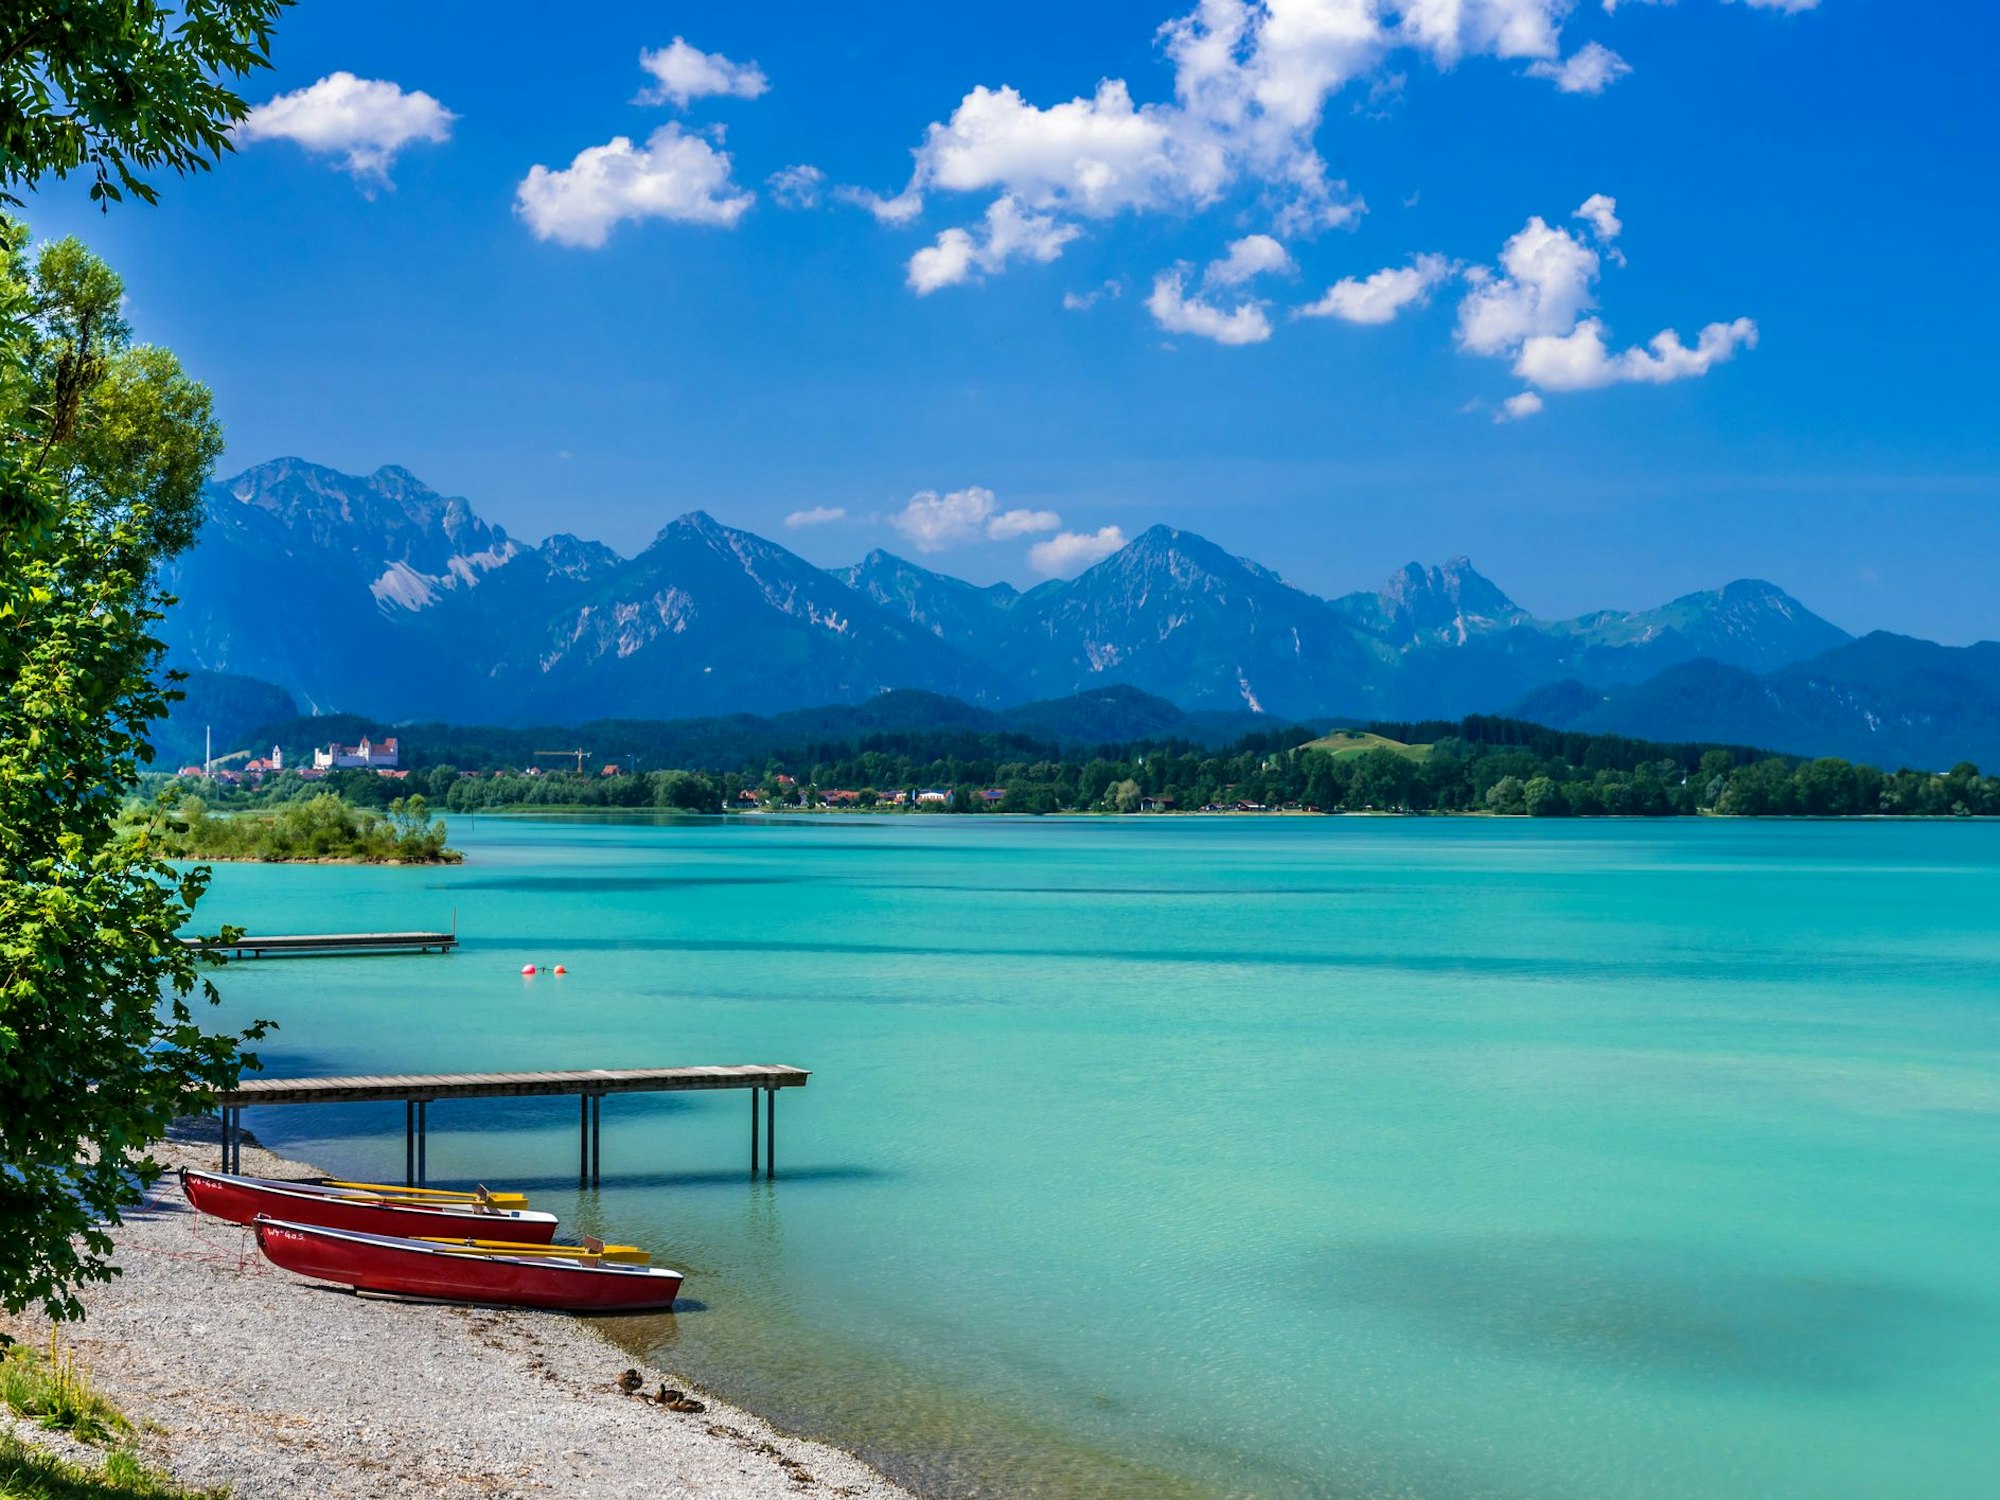 Der Forggensee gehört dank seines türkisgrünen Wassers zu den schönsten Gewässern in Bayern.